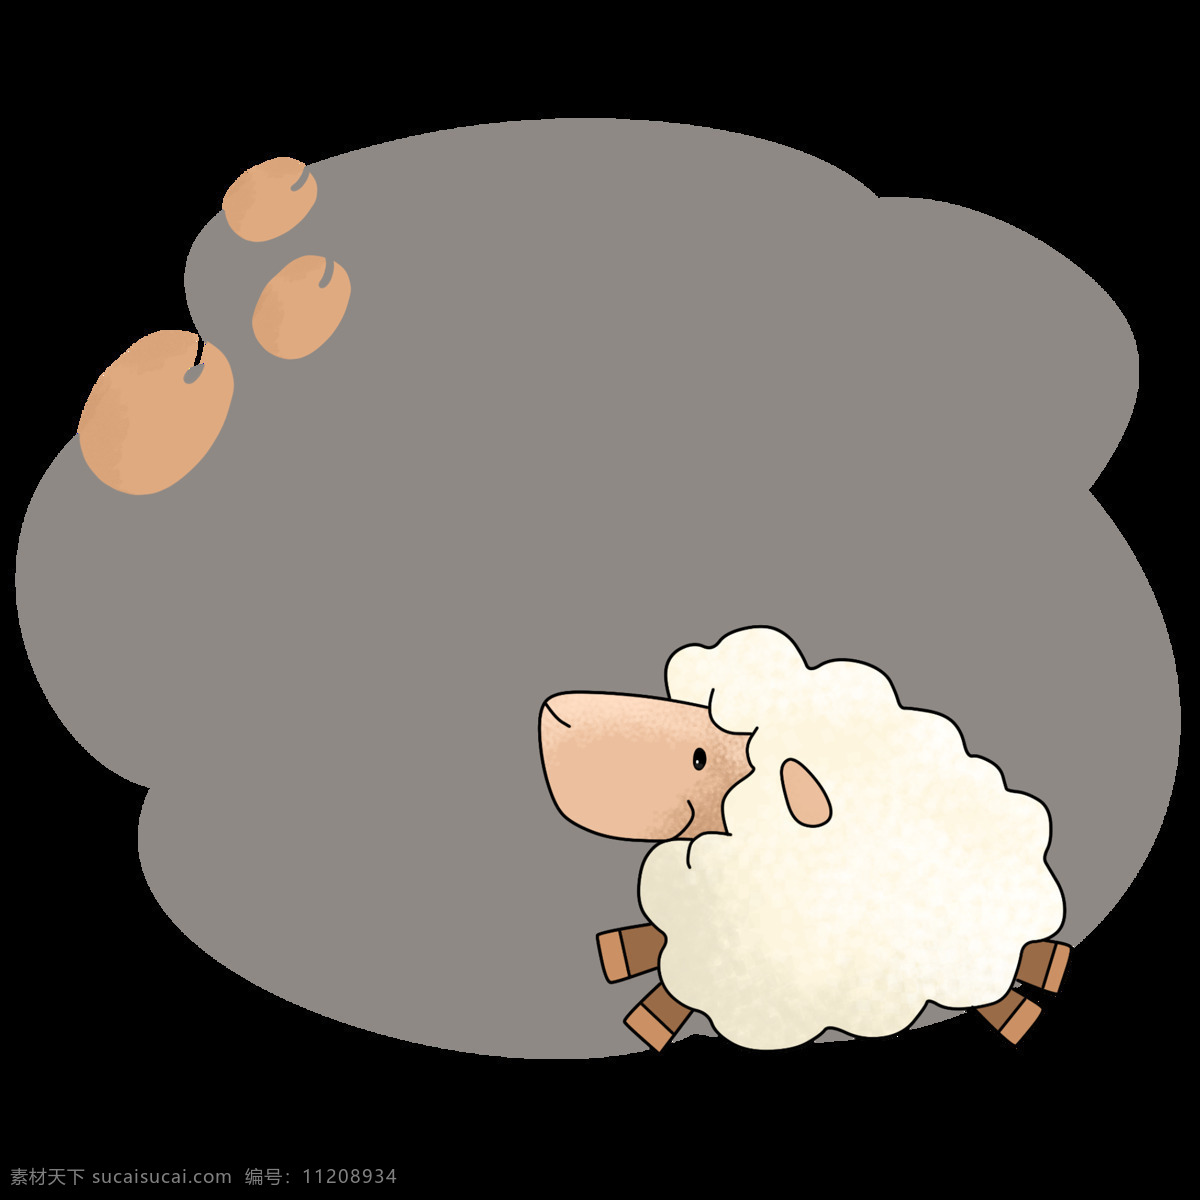 白色 小羊 边框 插画 可爱的边框 动物边框 手绘边框 卡通小羊边框 漂亮